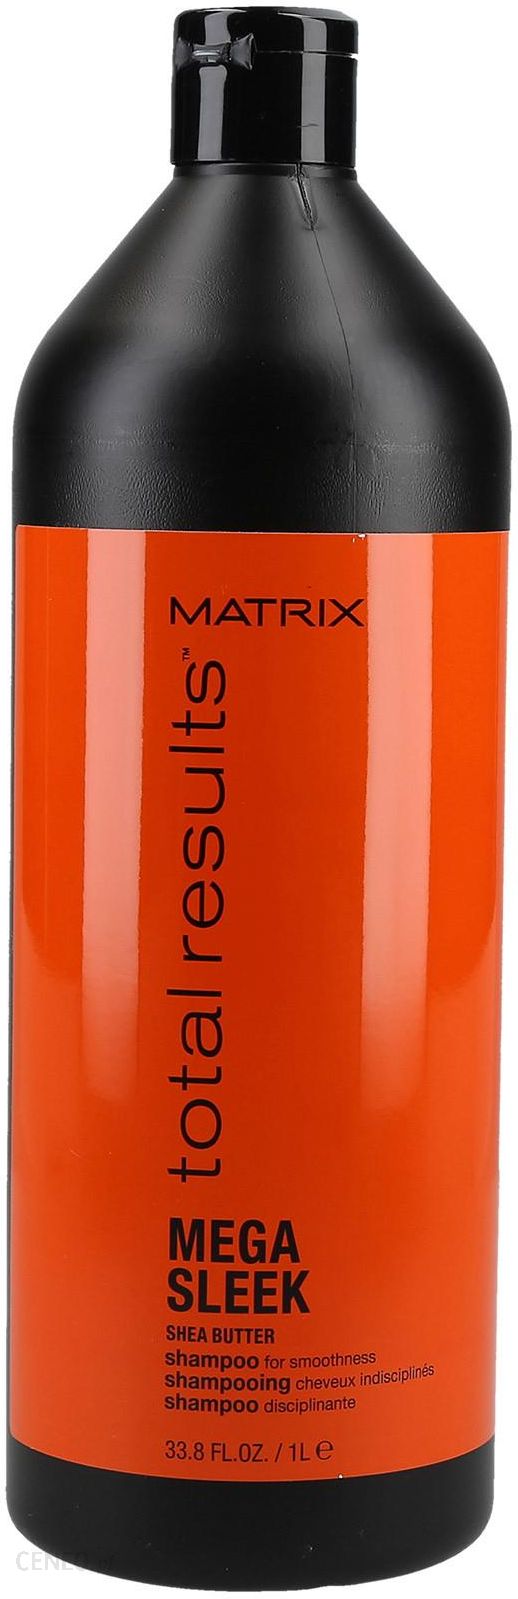 szampon matrix do włosów przetłuszczających